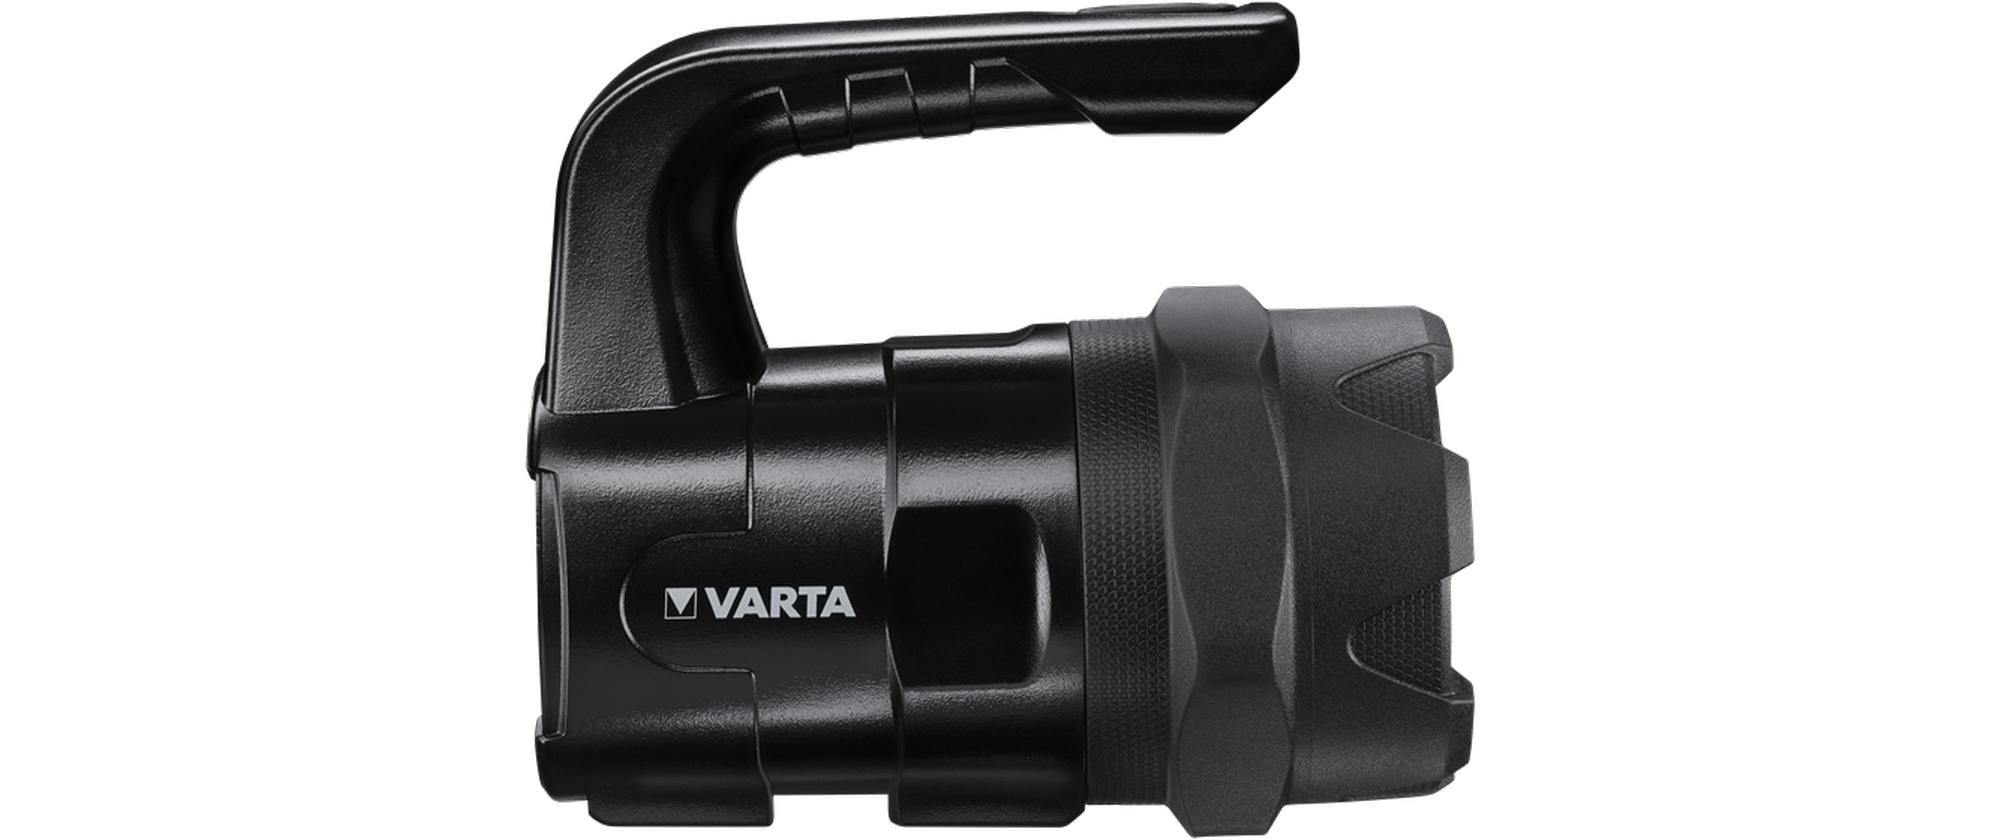 Varta Taschenlampe Indestructible BL20 Pro